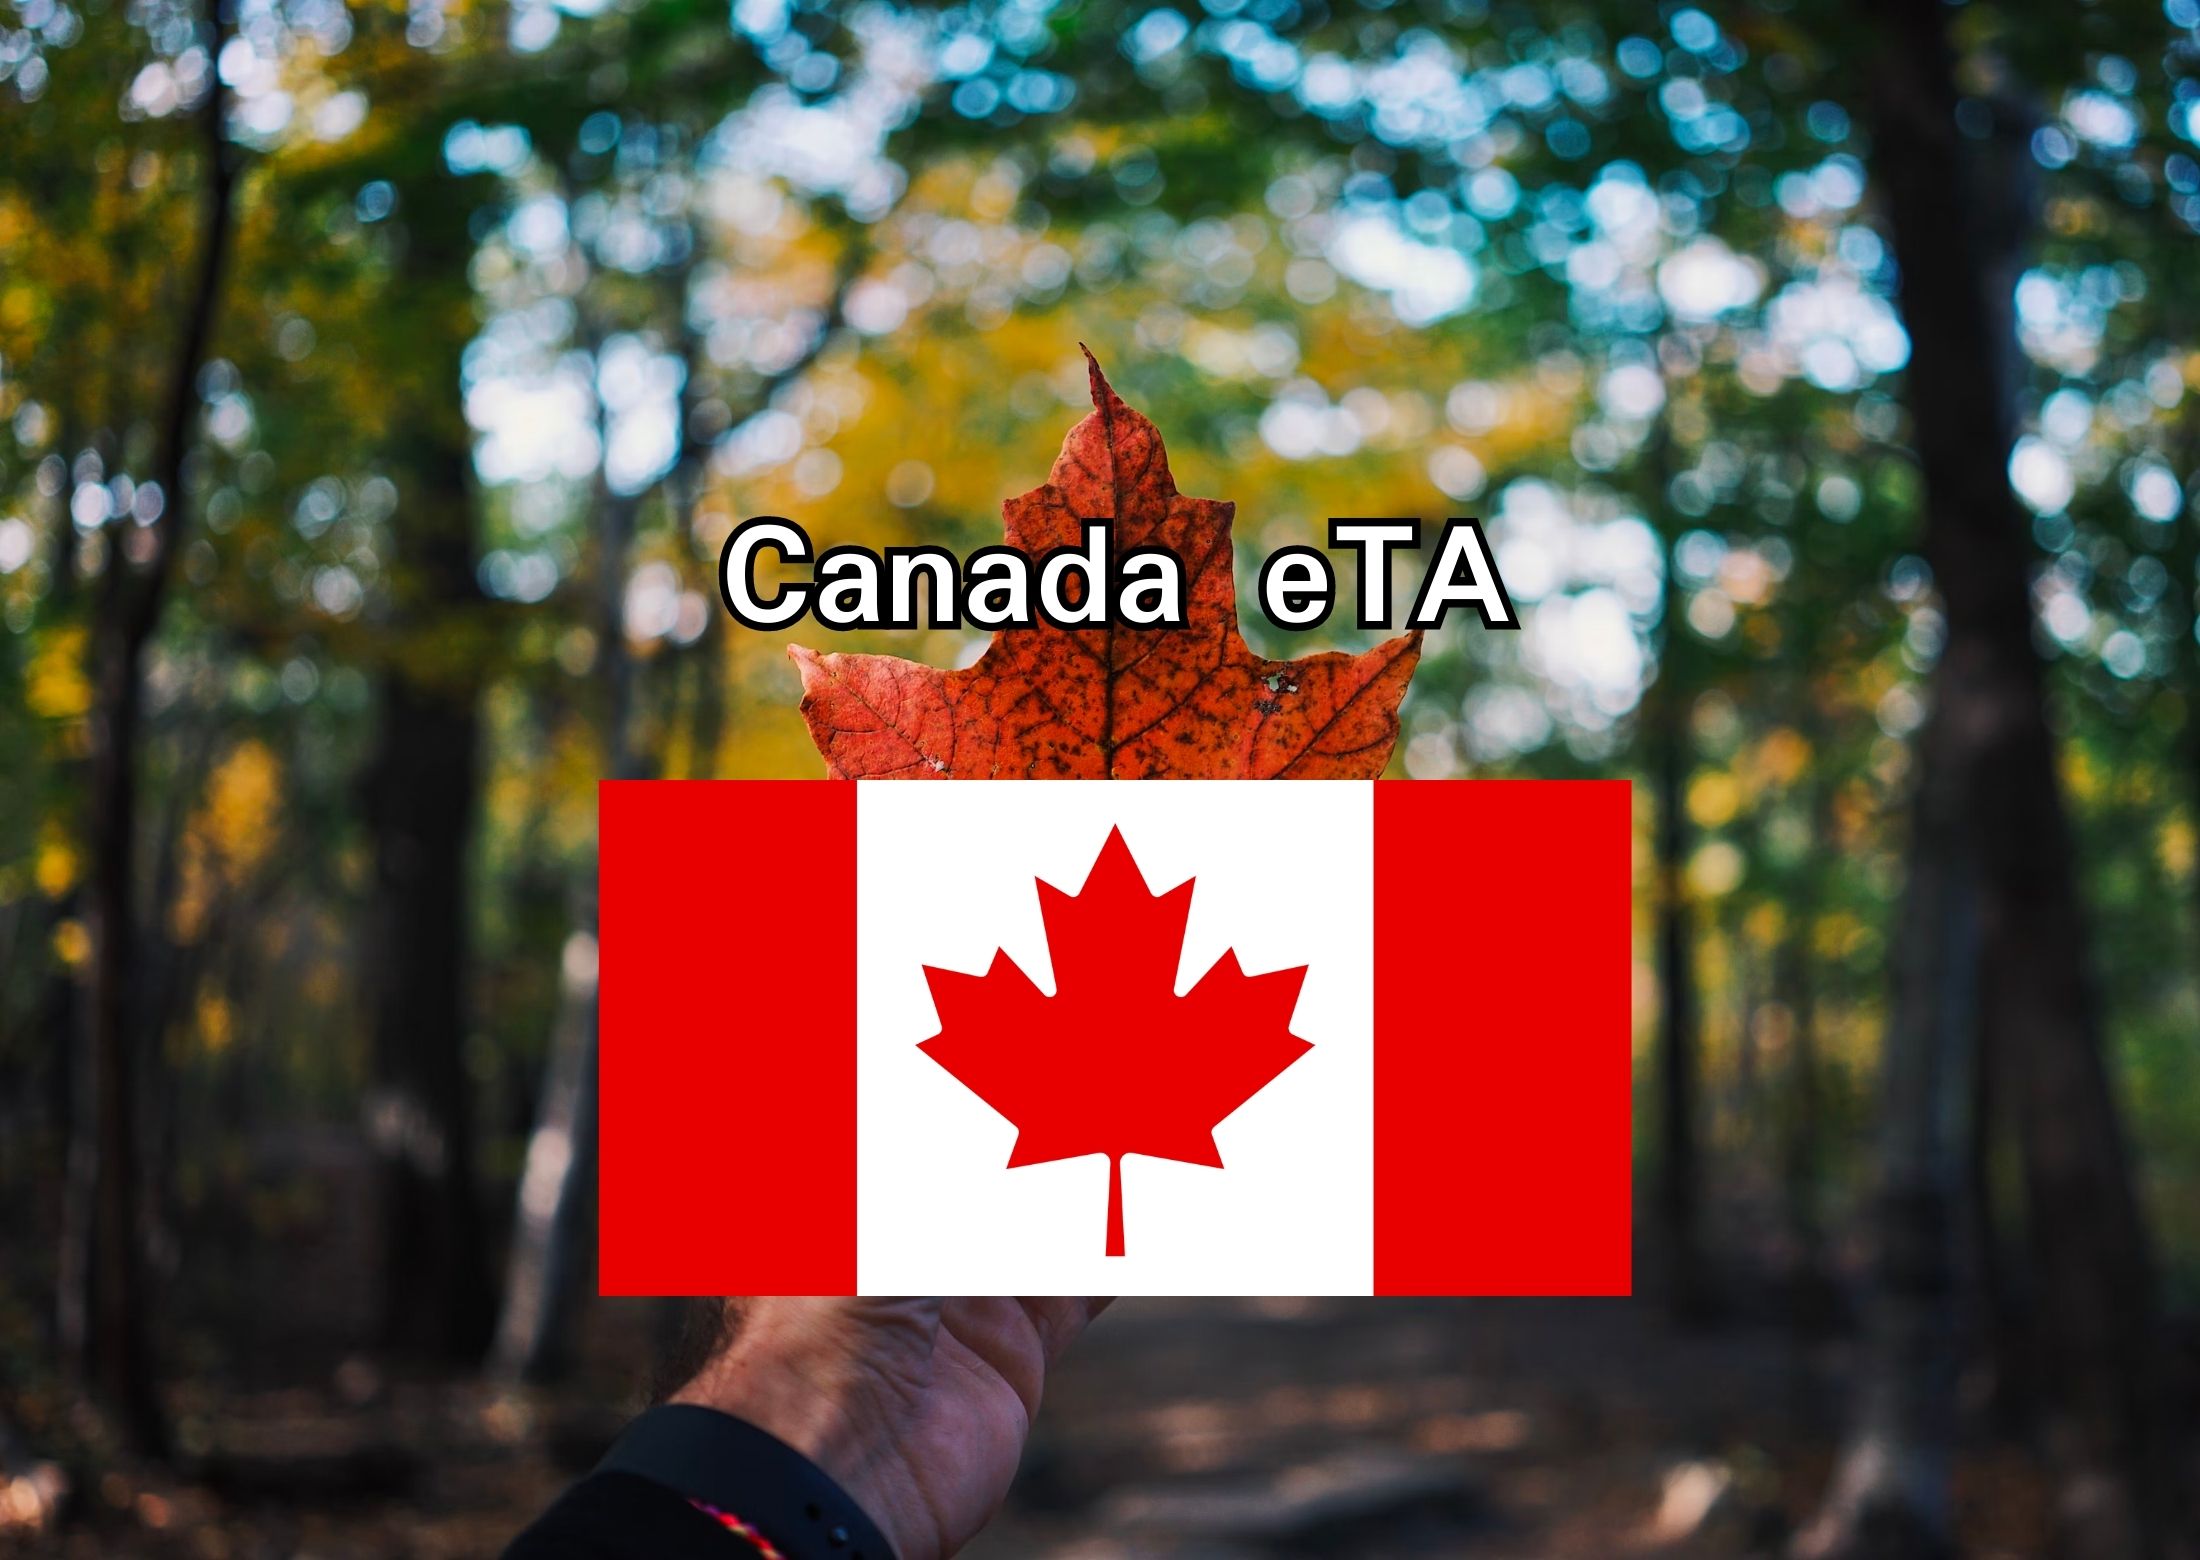 Canada eTA